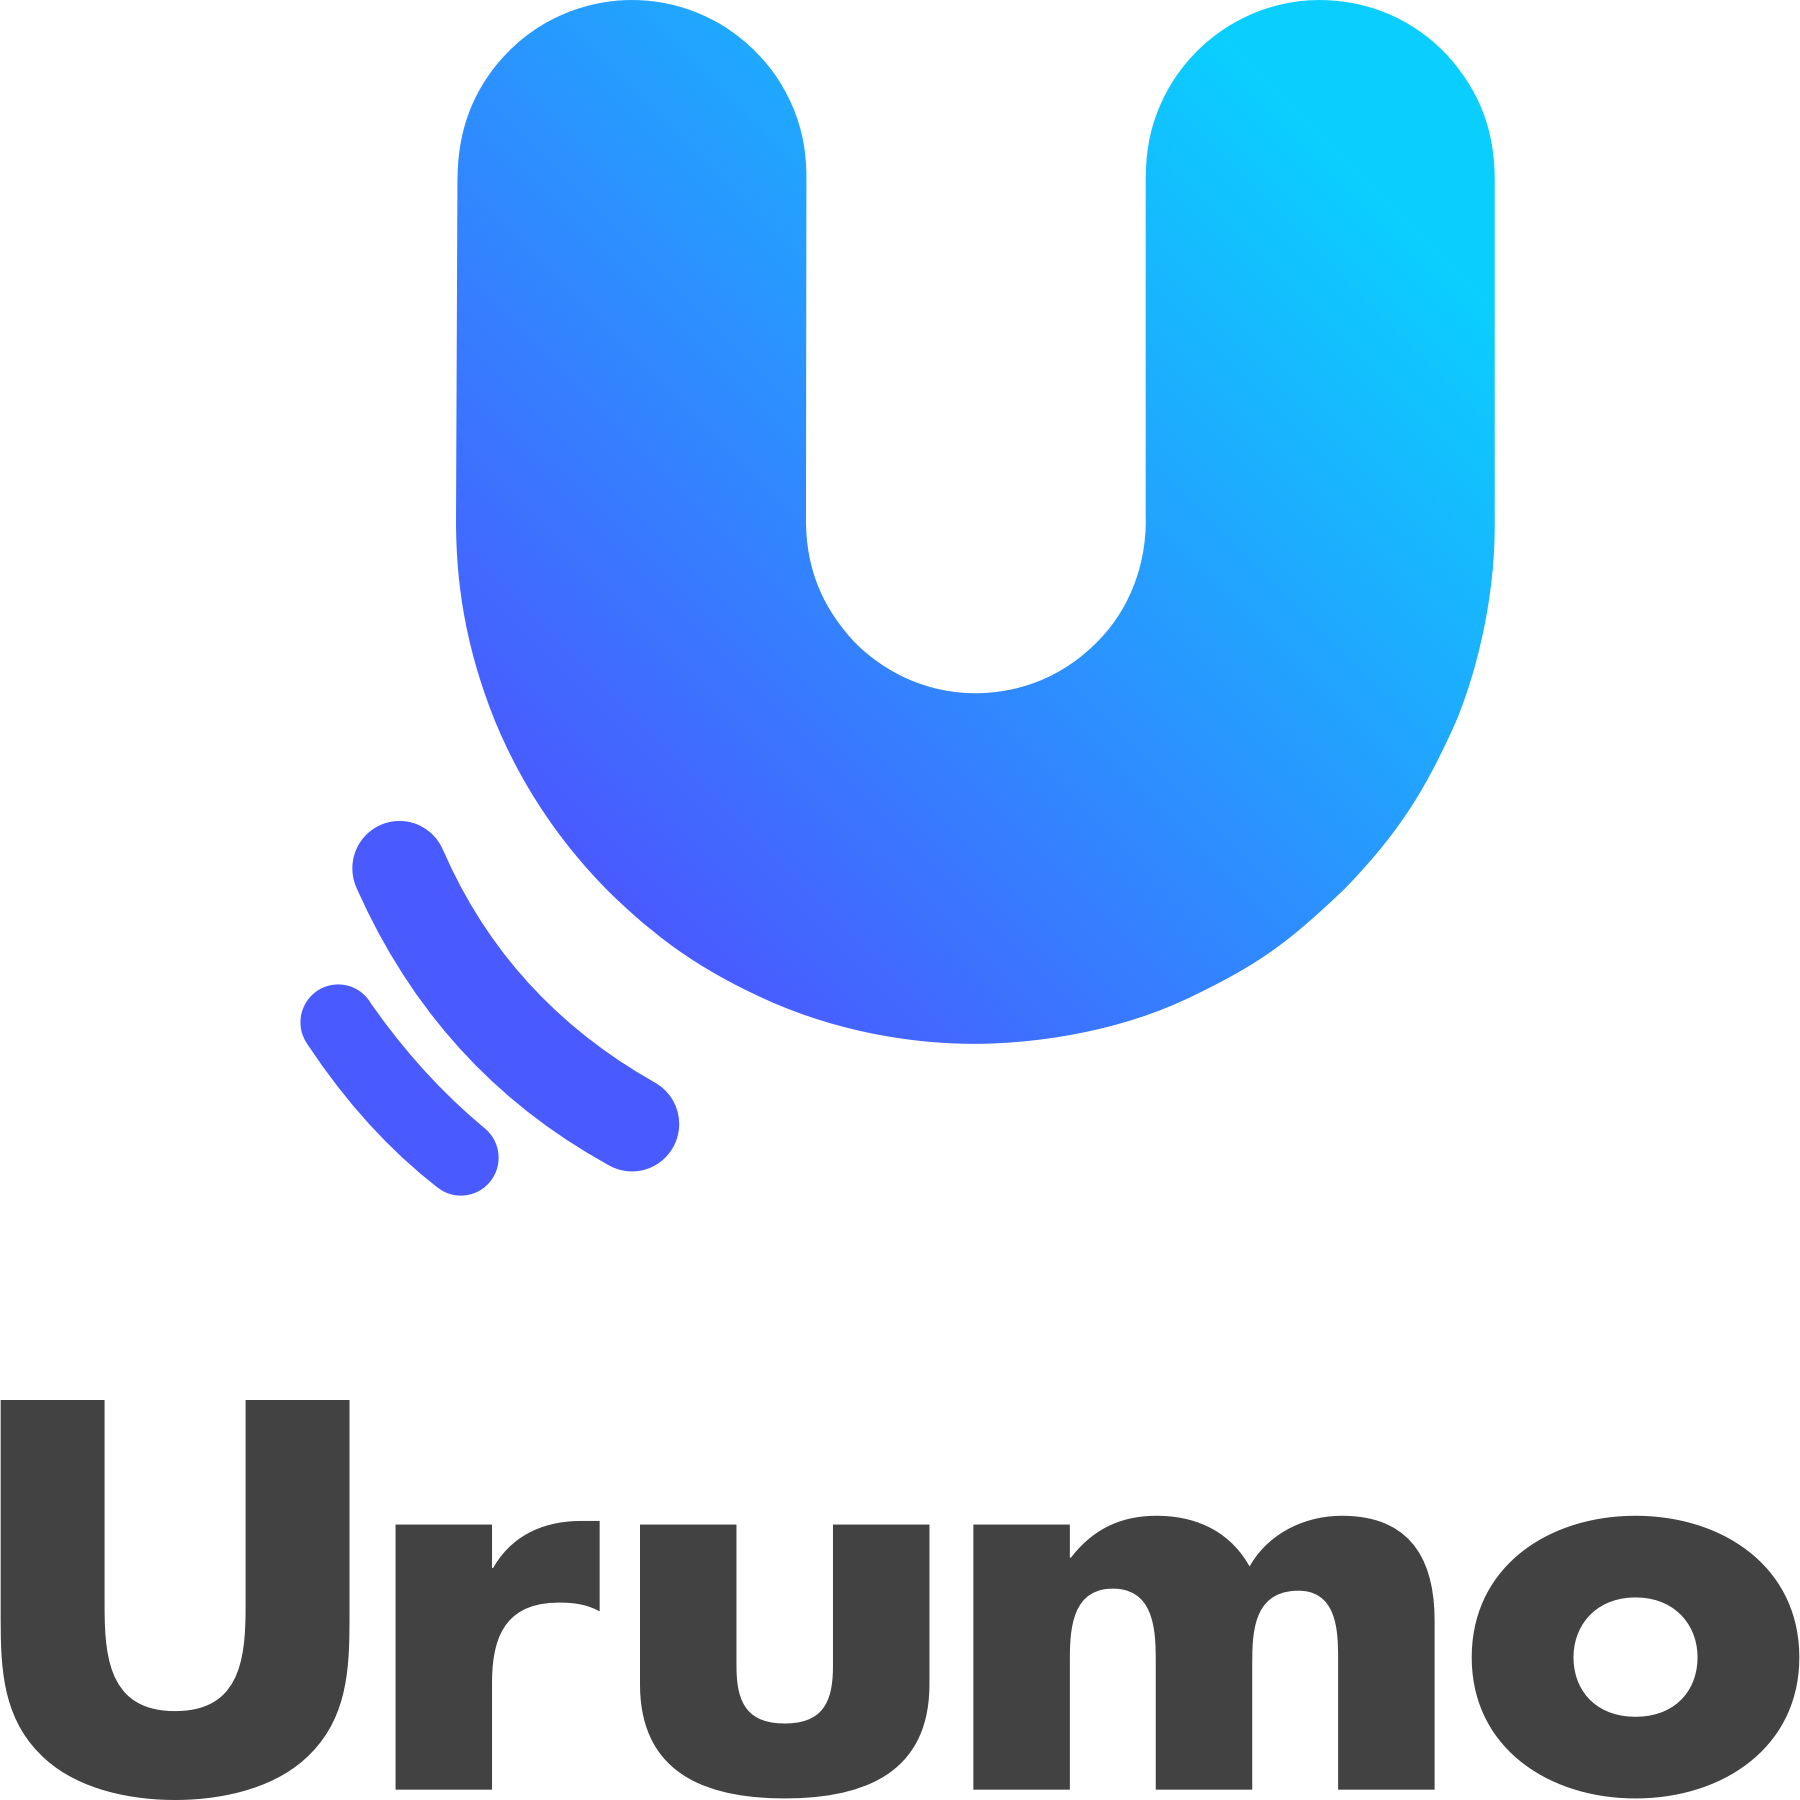 大きな丸の重なりをモチーフにしたUrumoのロゴは「情報」「商品」「売場」を表しています。また「でかけたくなる、買いたくなる、をもっと」のメッセージにあわせ、でかけたくなる動的なイメージと、右肩上がりに消費が活性化するイメージを表現しています。